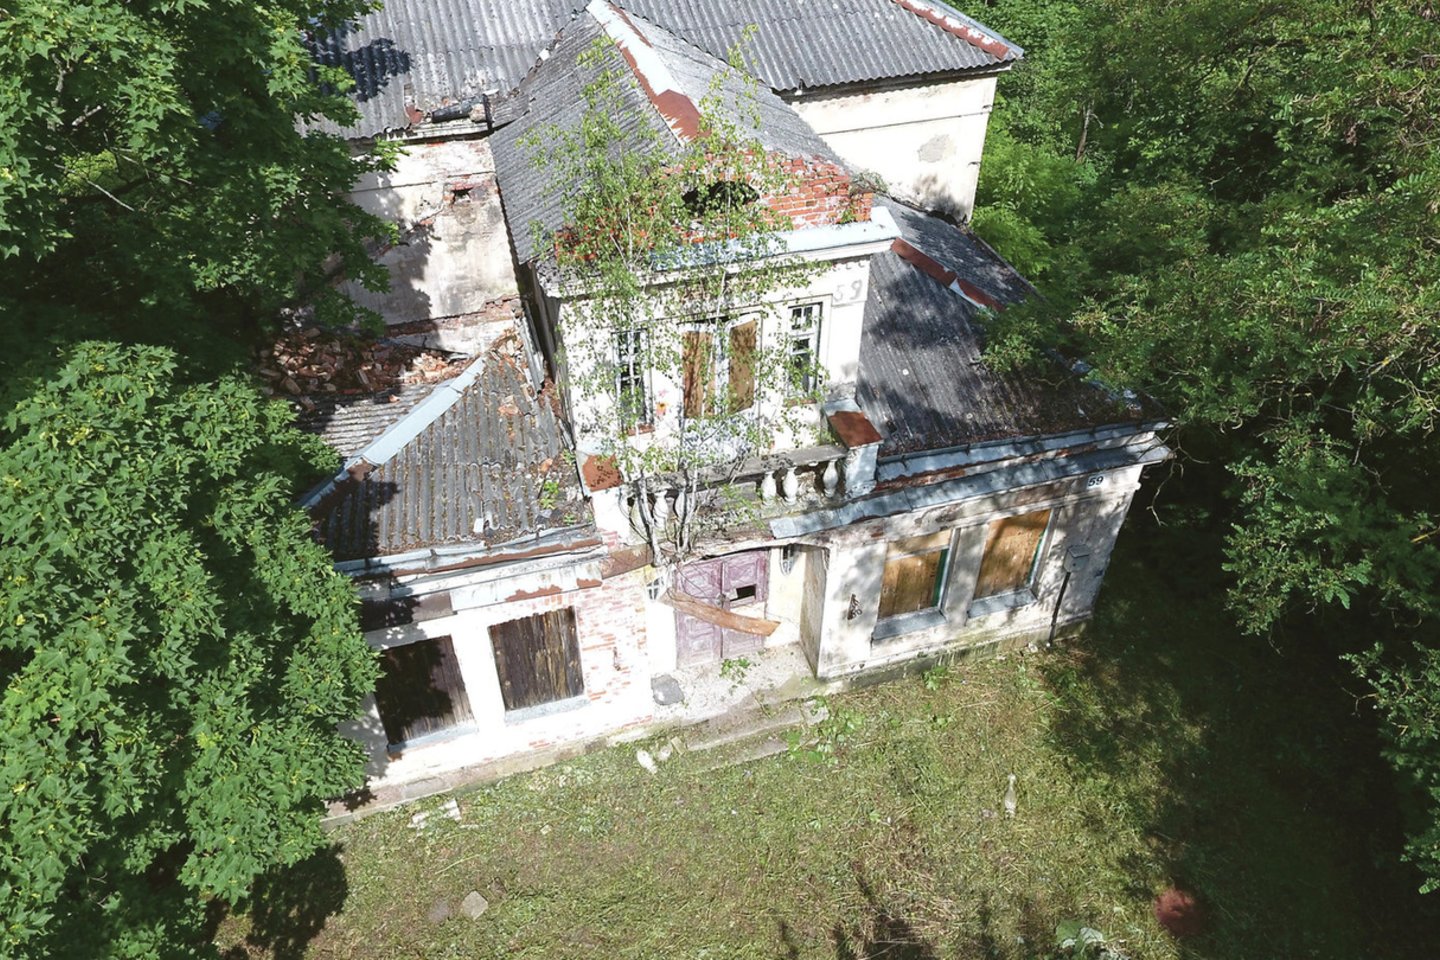 Lakūnų plente stovėjusi romantiška vila turėjo įdomių detalių, bet šiais metais savininkas pastatą nugriovė.<br>L.Tuleikio nuotr.